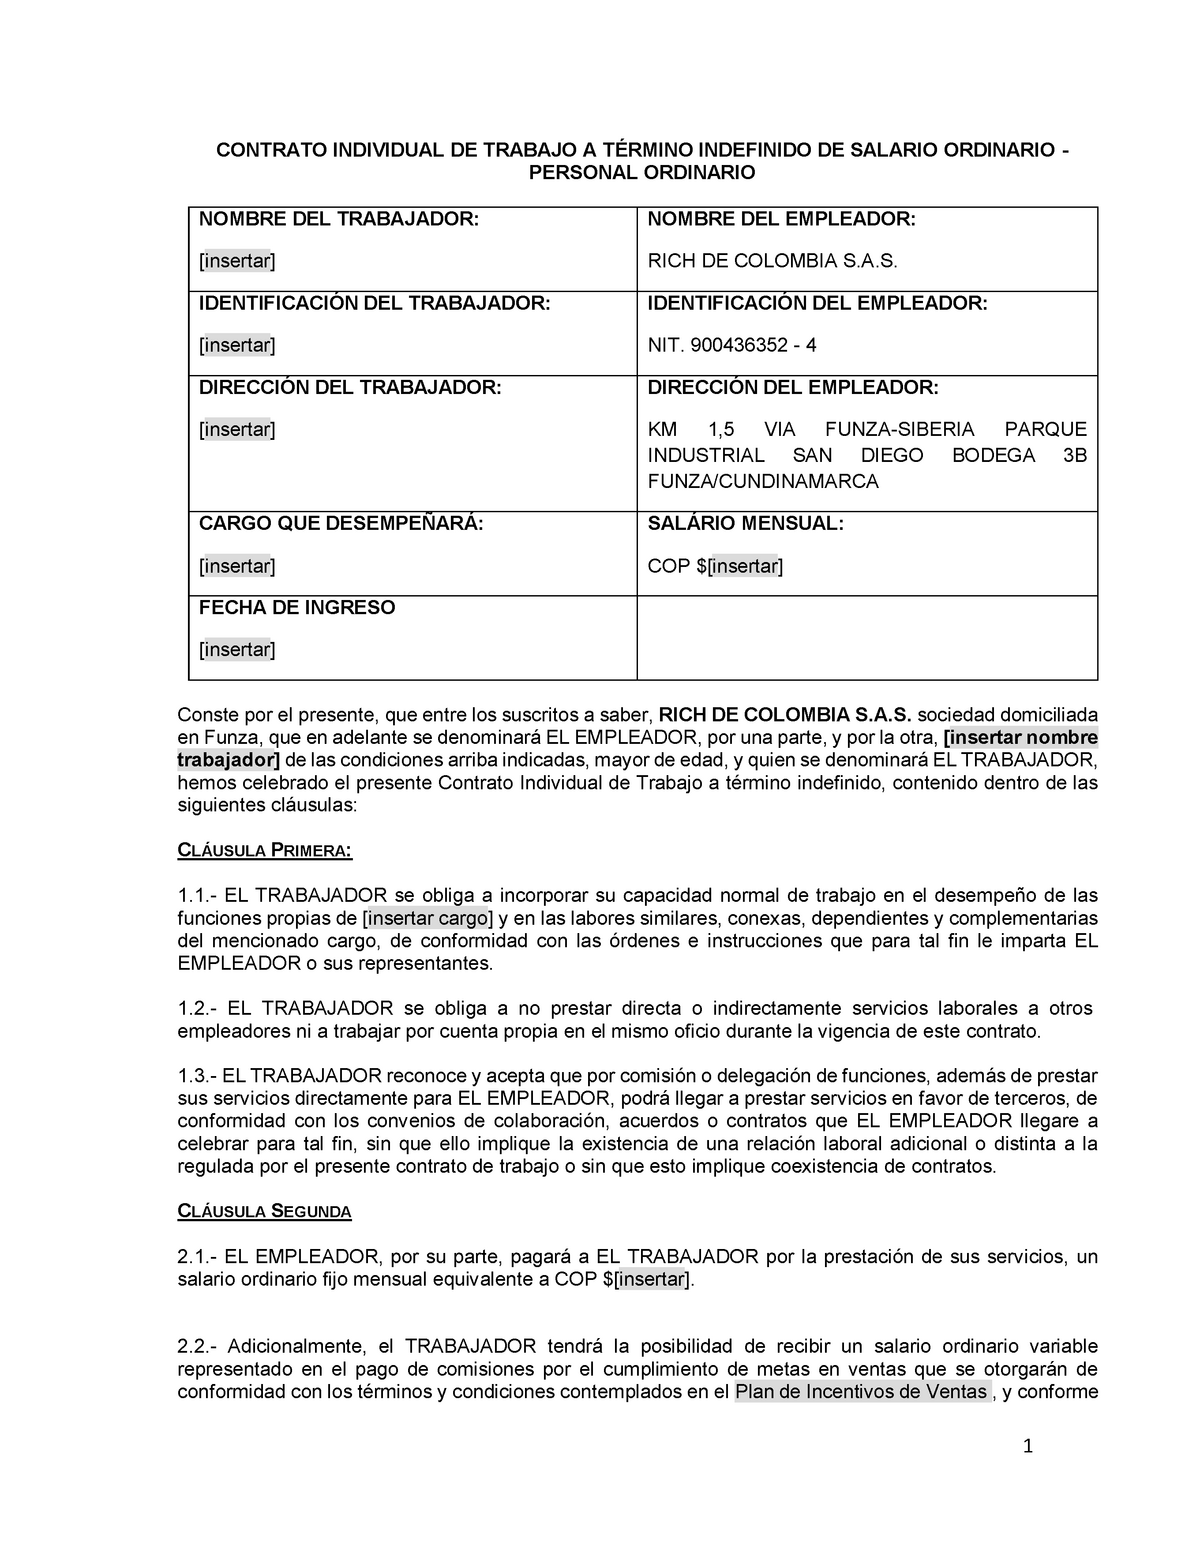 Modelo contrato de trabajo de personal comercial - salario ordinario -  personal ordinario - Studocu